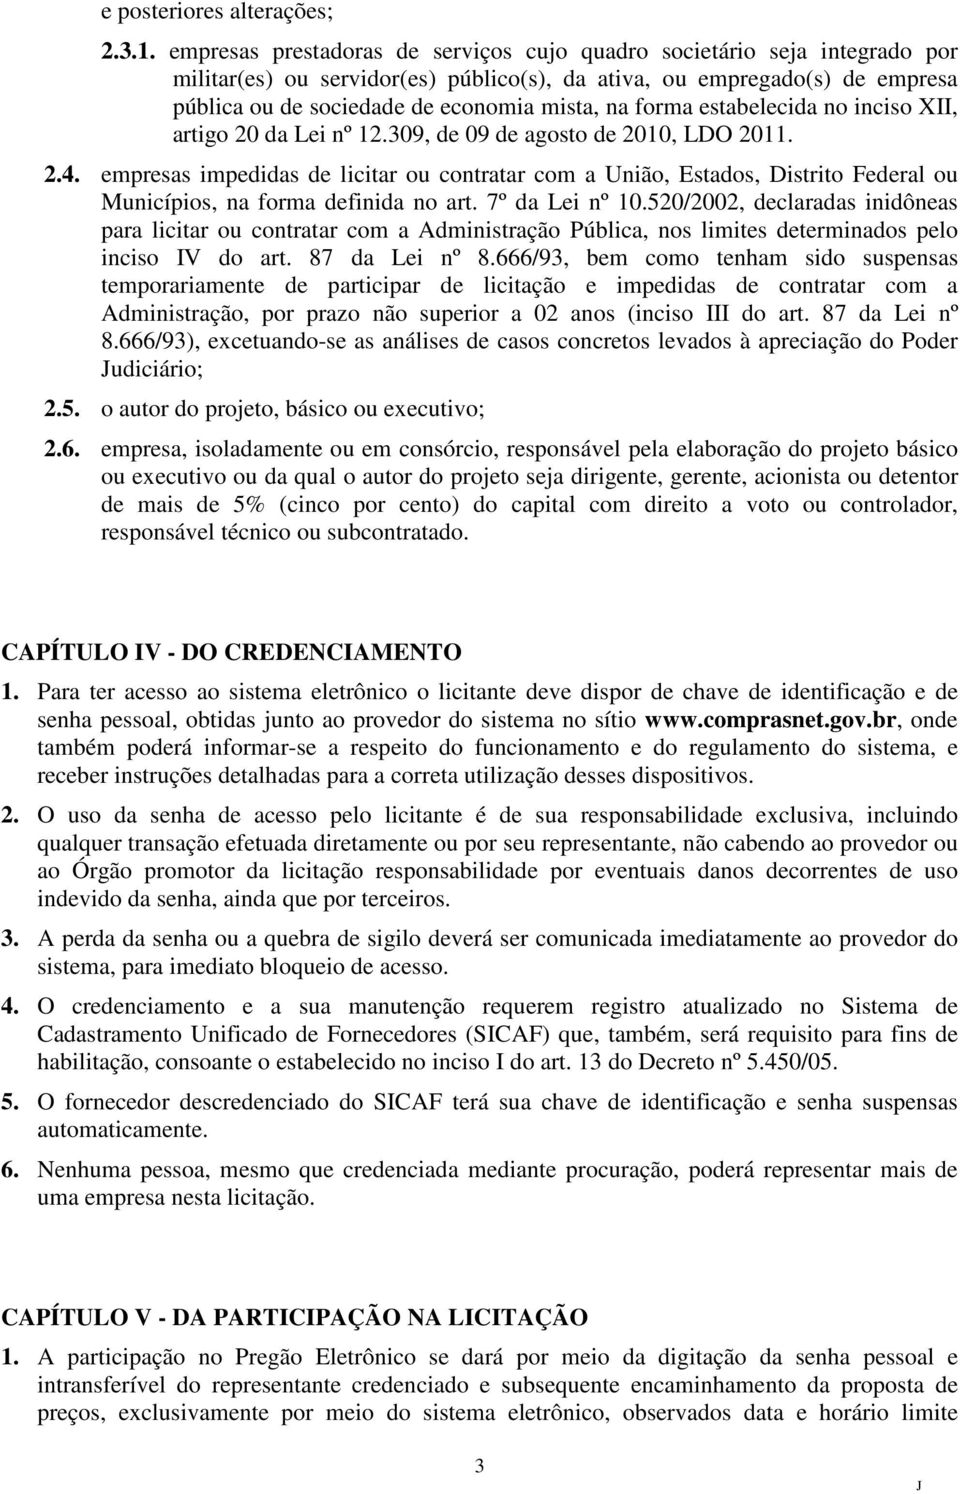 forma estabelecida no inciso XII, artigo 20 da Lei nº 12.309, de 09 de agosto de 2010, LDO 2011. 2.4.